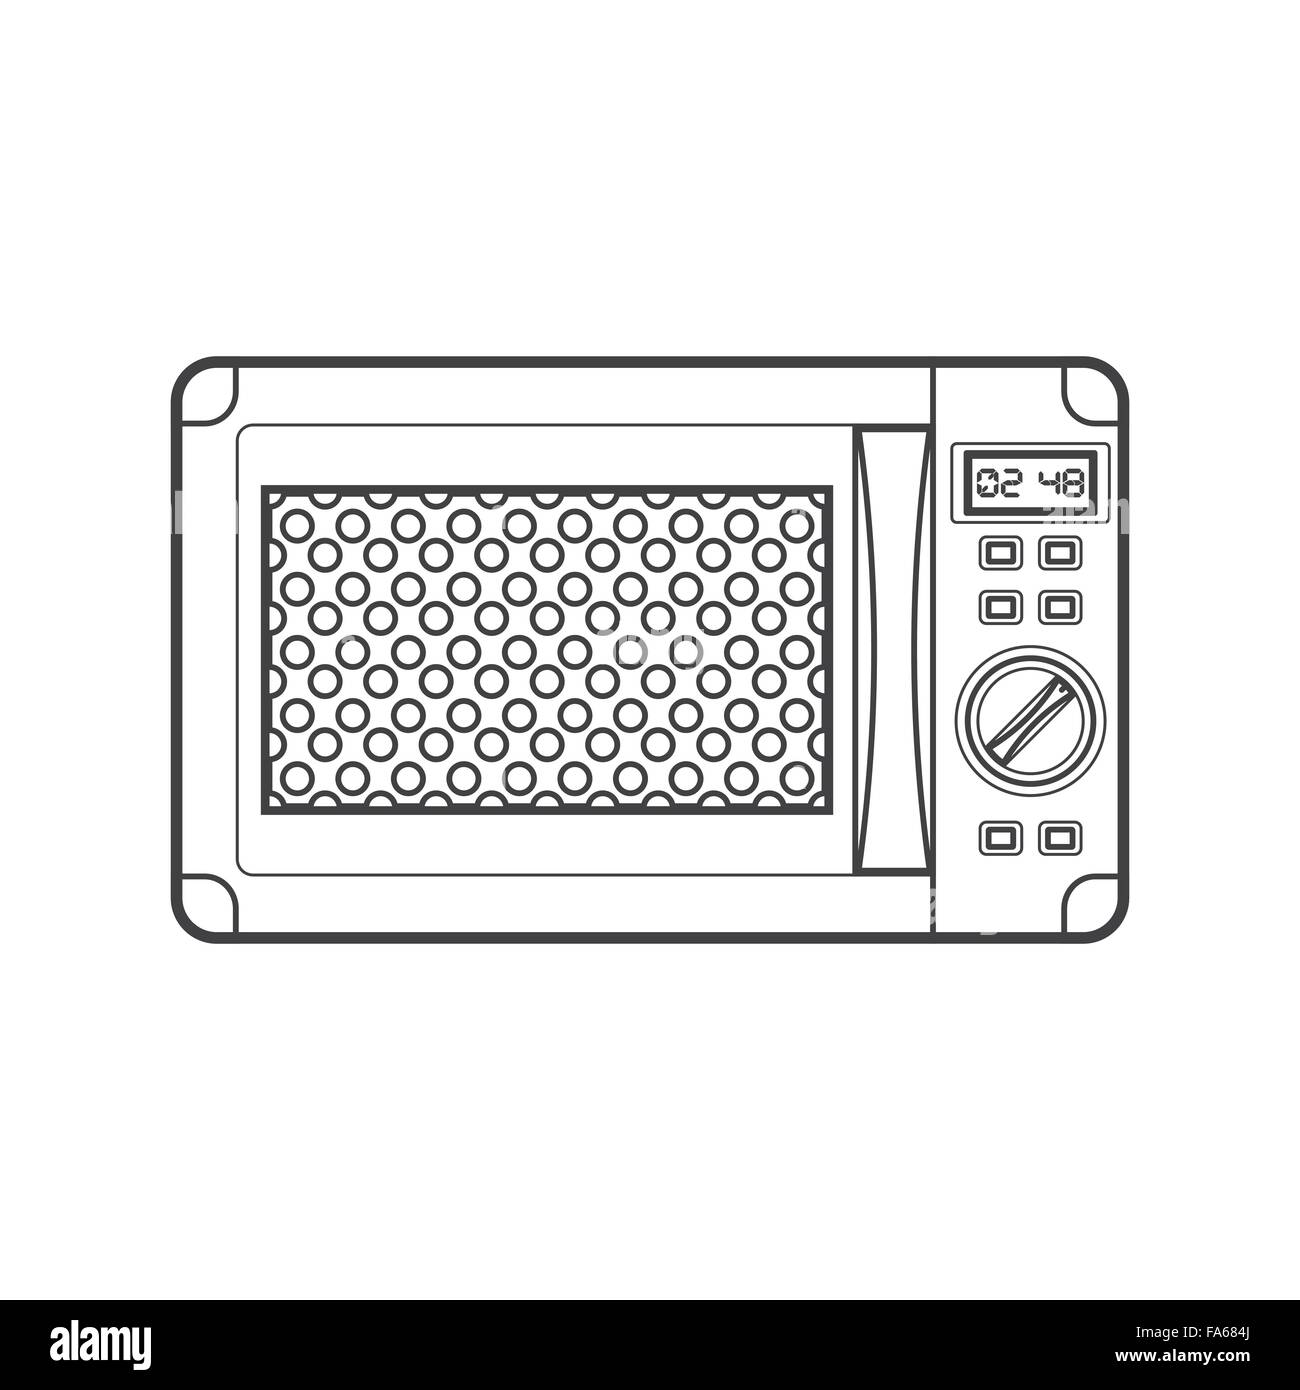 monochrome Kontur moderne Küche Mikrowelle isoliert schwarzen Umriss Vektorgrafik auf weißem Hintergrund Stock Vektor